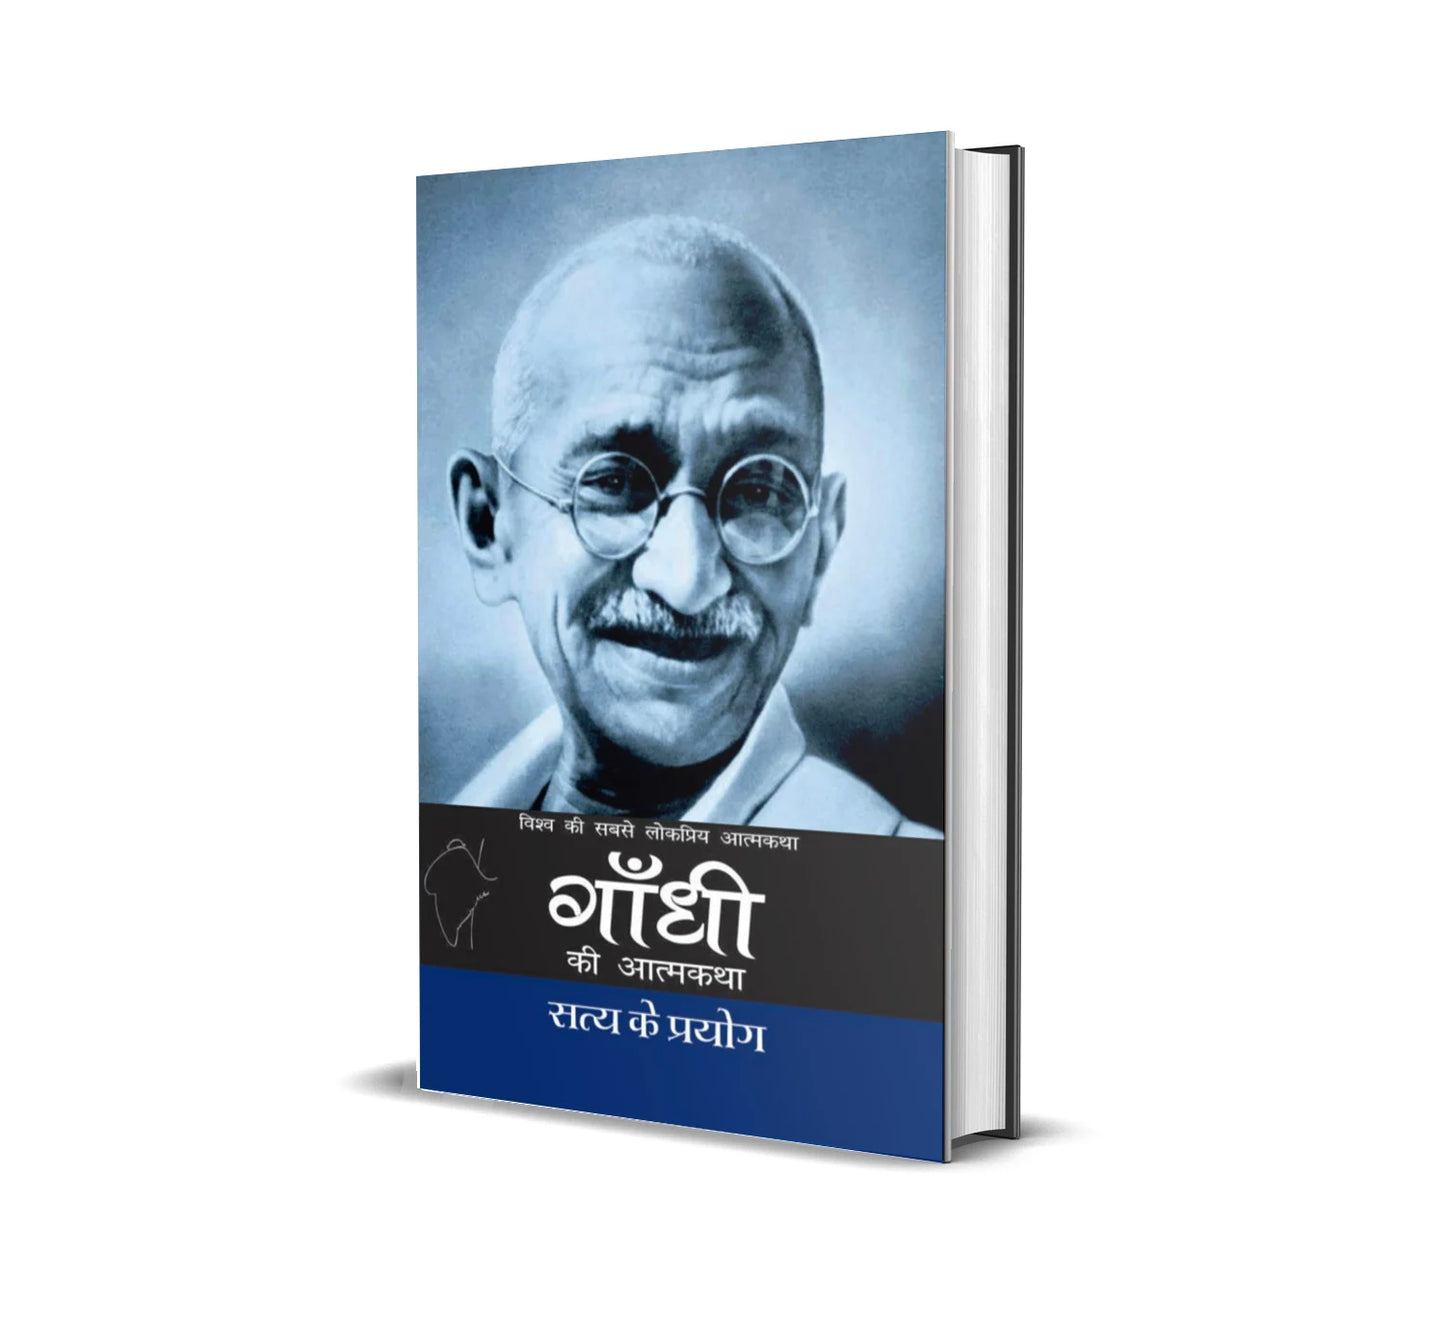 [Hindi] Satya Ke Prayog by Mahatma Gandhi (Paperback)